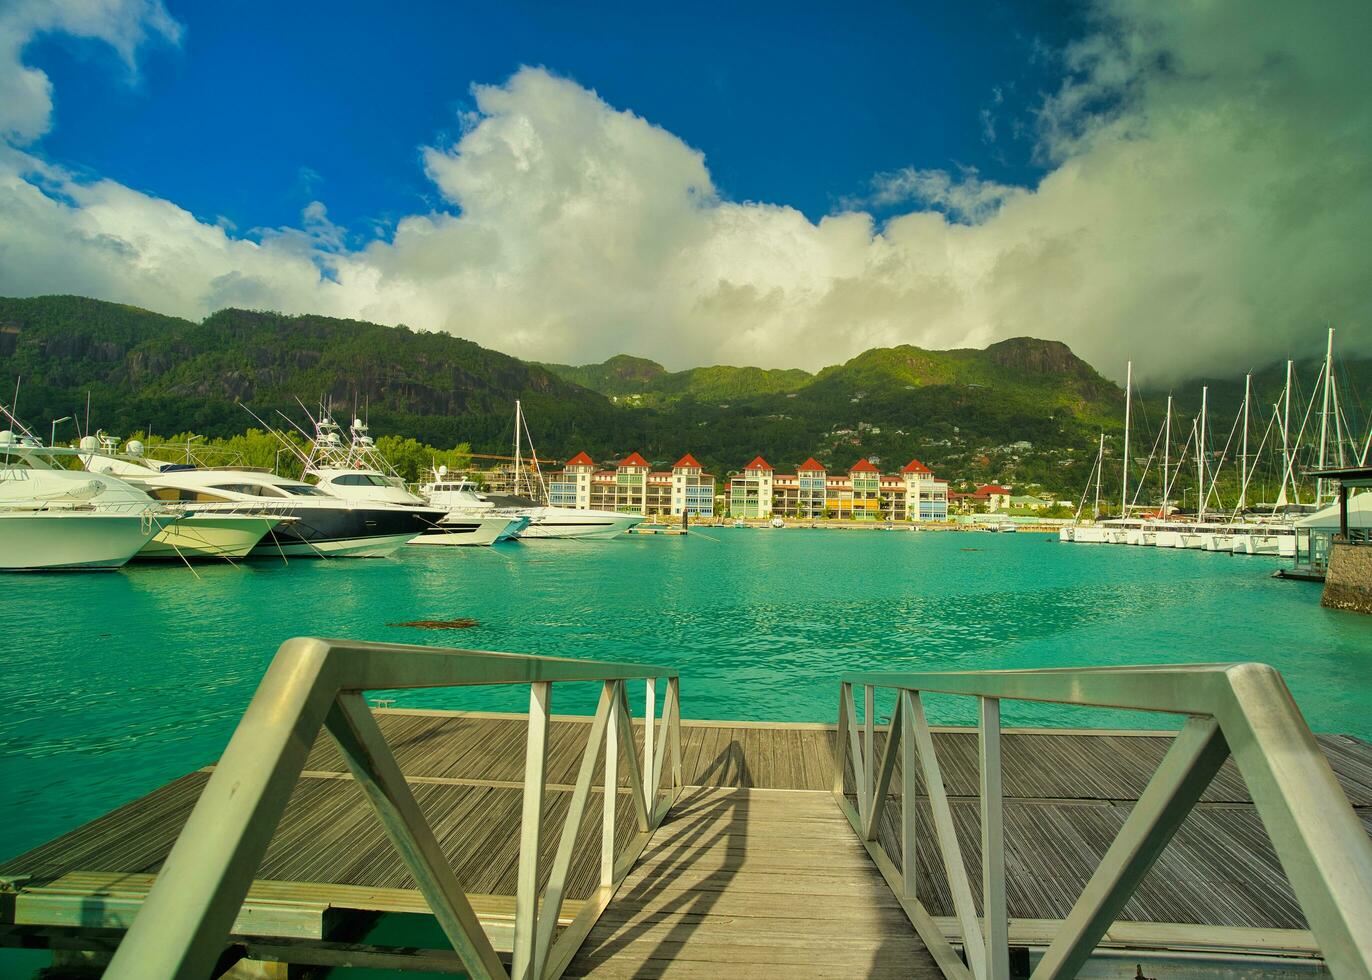 attracco yachts e Barche a Eden isola marina con nuovo edificio ville a il Indietro, Visualizza di mahe isola, lussureggiante montagna, Seychelles foto